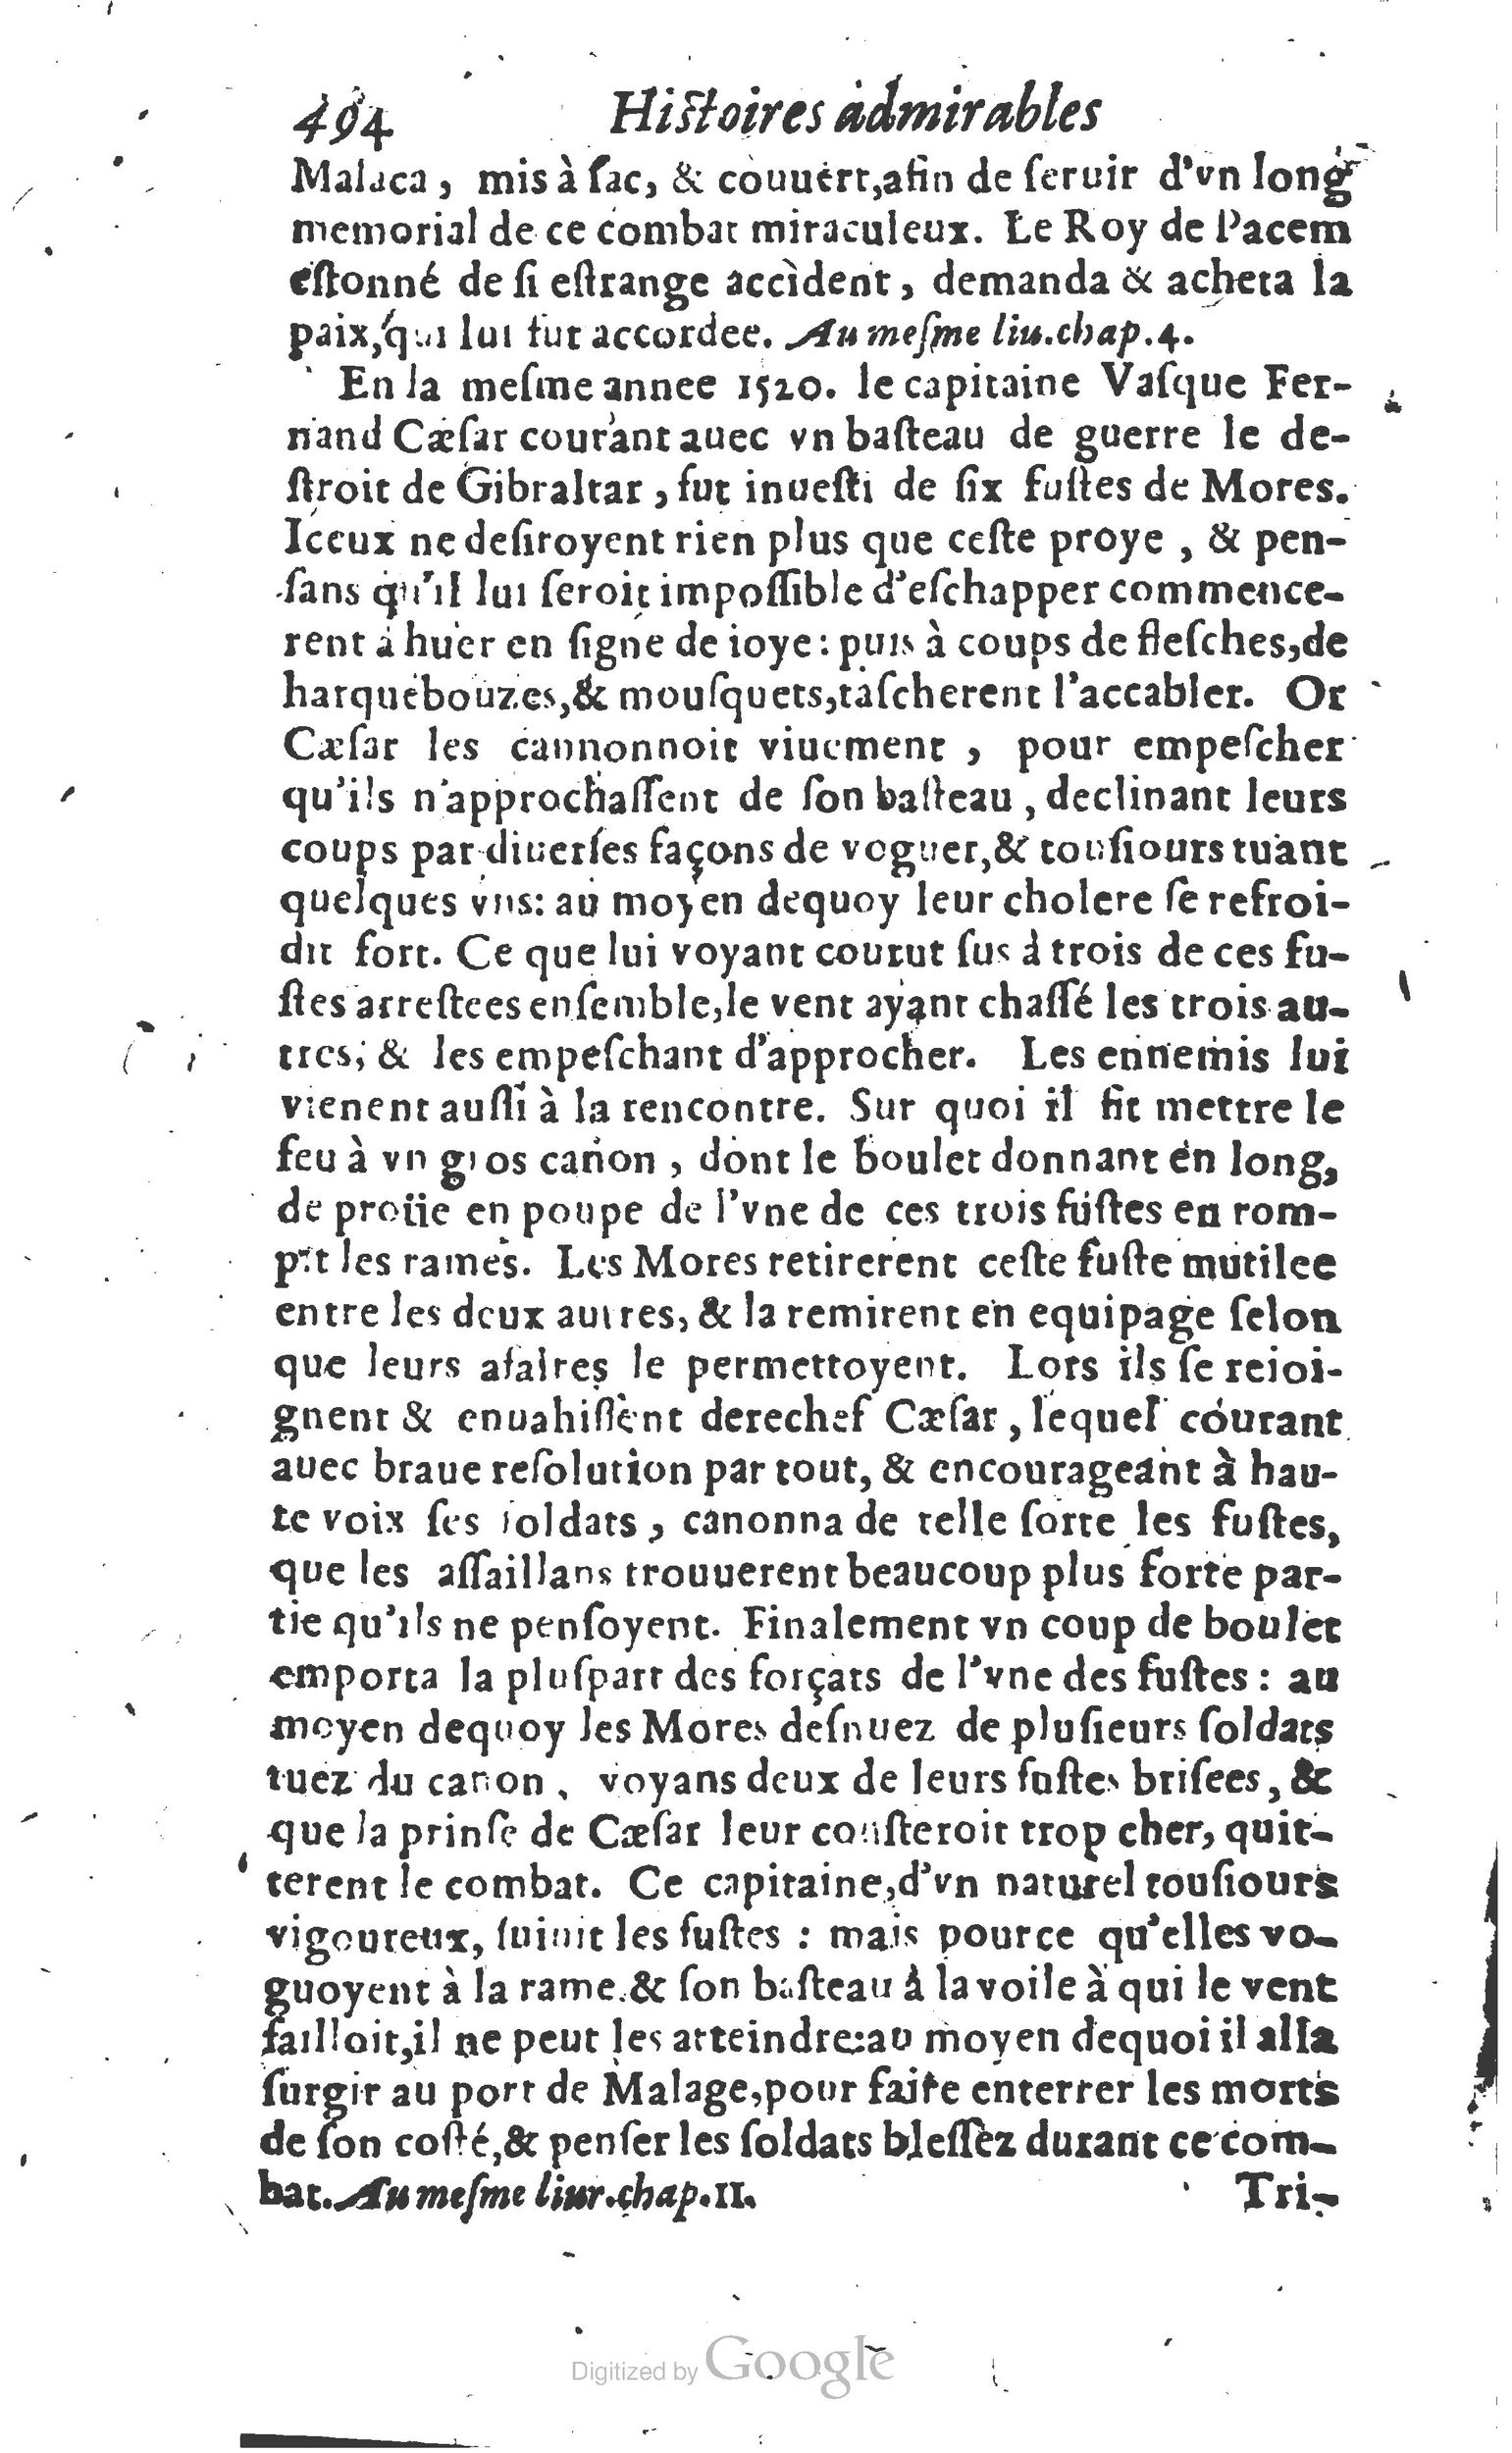 1610 Trésor d’histoires admirables et mémorables de nostre temps Marceau Princeton_Page_0515.jpg